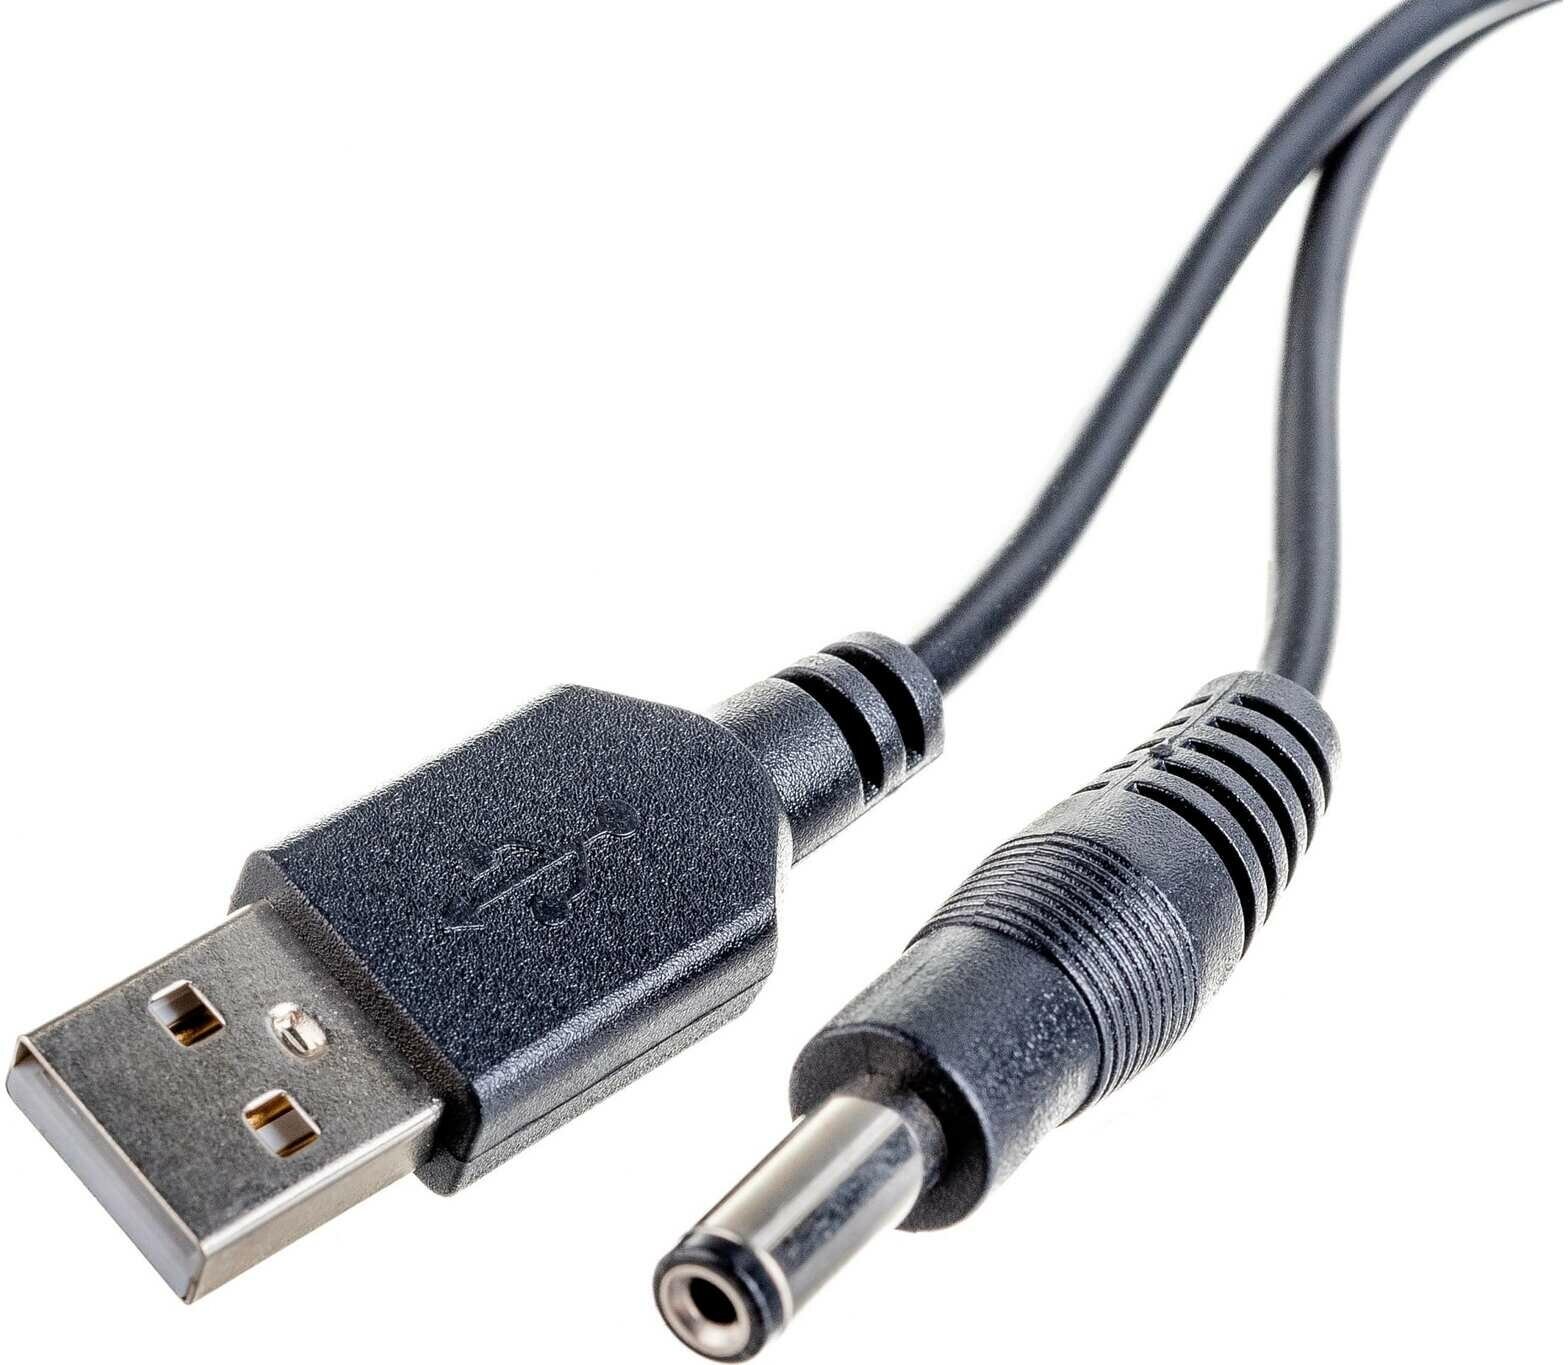 Кабель (USB штекер - DC разъем 2.1х5.5 мм) 1.5 м для подачи питания или зарядки, цвет черный